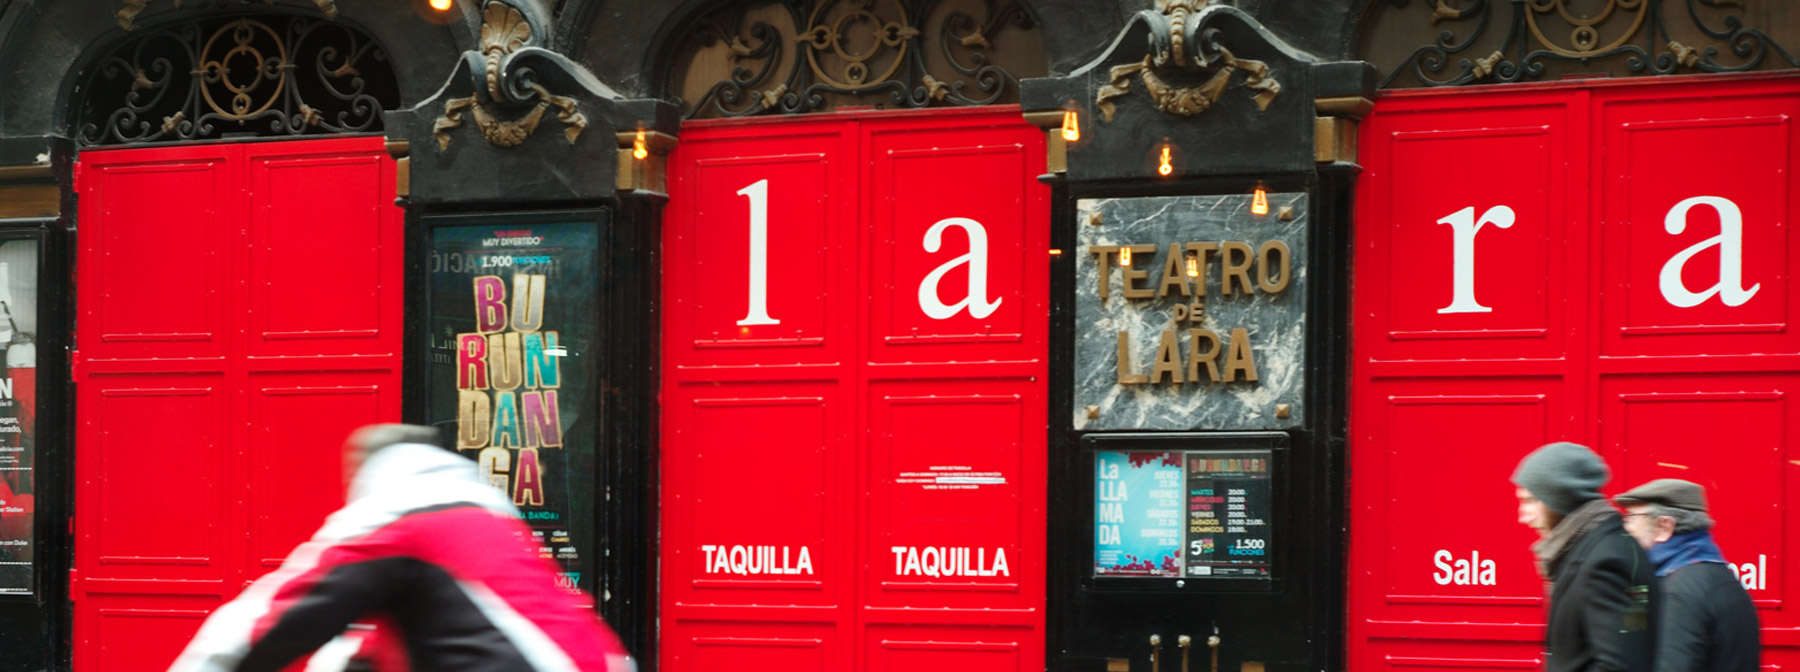 The bright red doors of Teatro de Lara